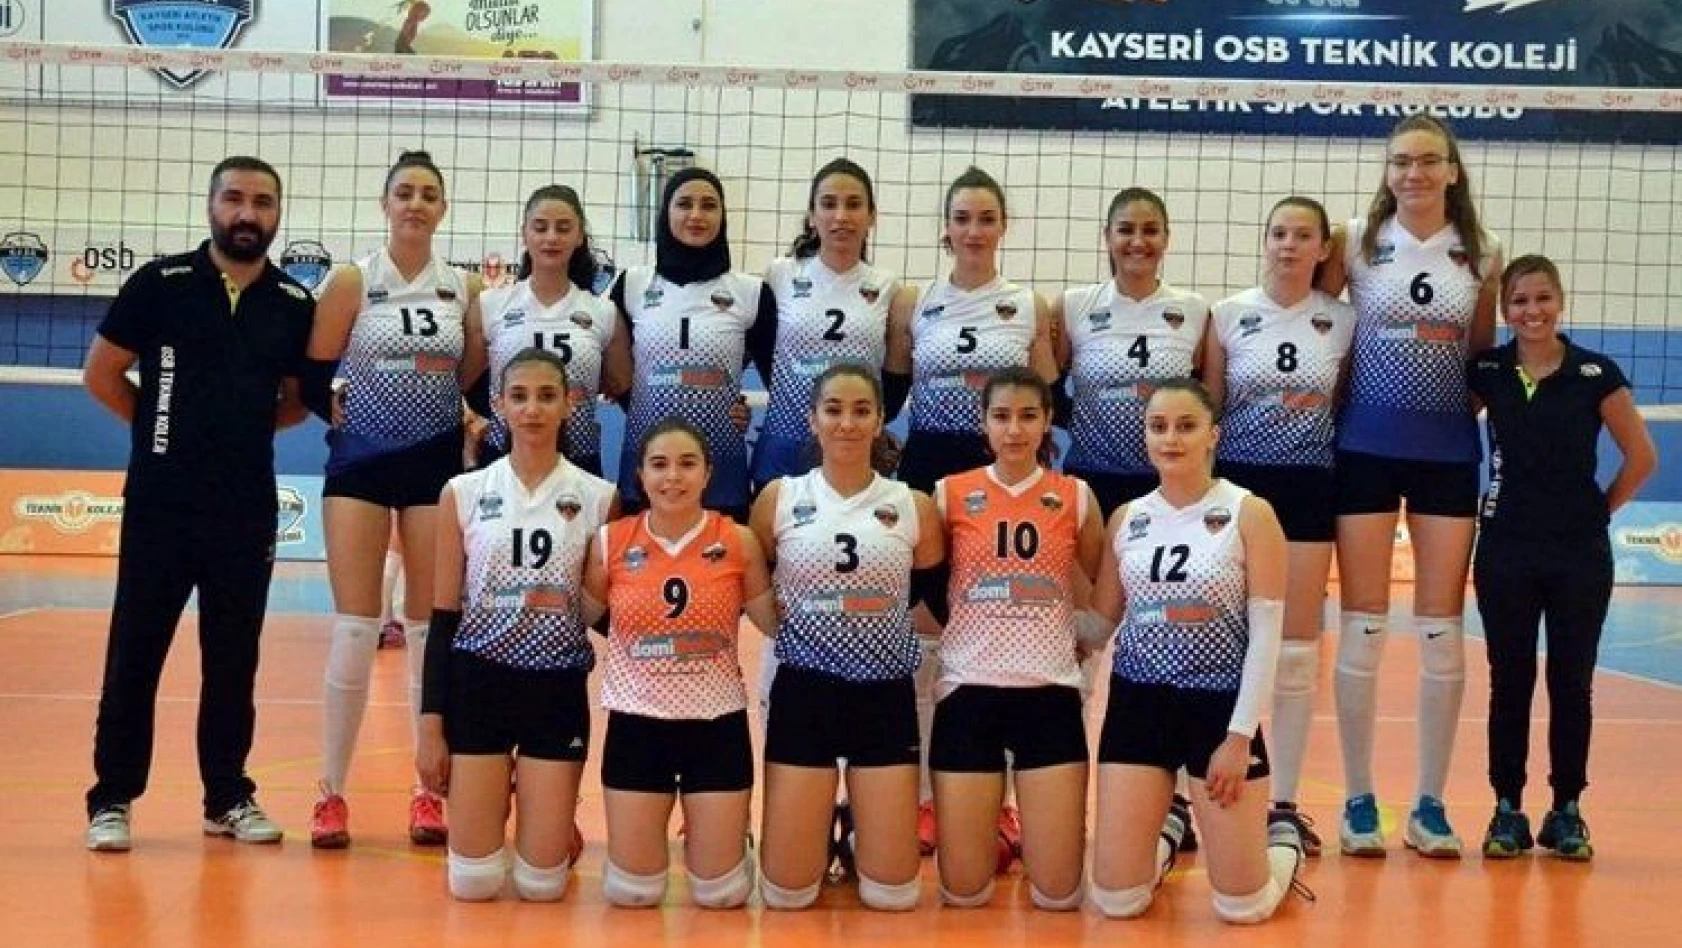 Kayseri OSB Atletikspor, Gaziantep'e gidiyor